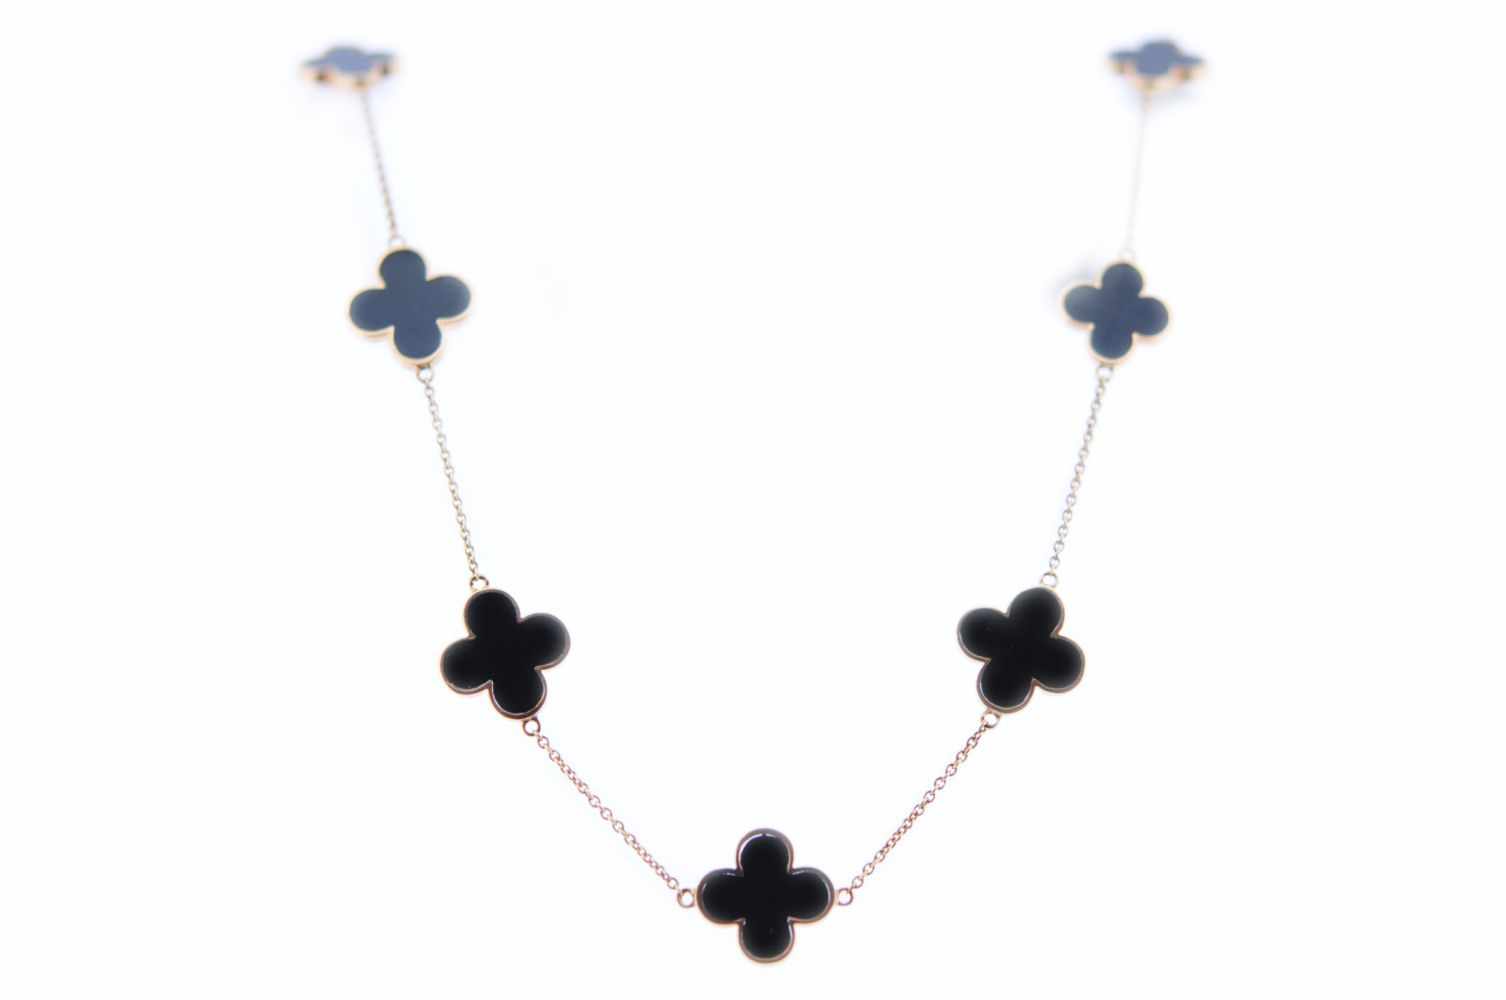 OnyxhalsketteRosegoldene 18 karätige Halskette mit Elementen in Kleeblattform, mit geschliffenem